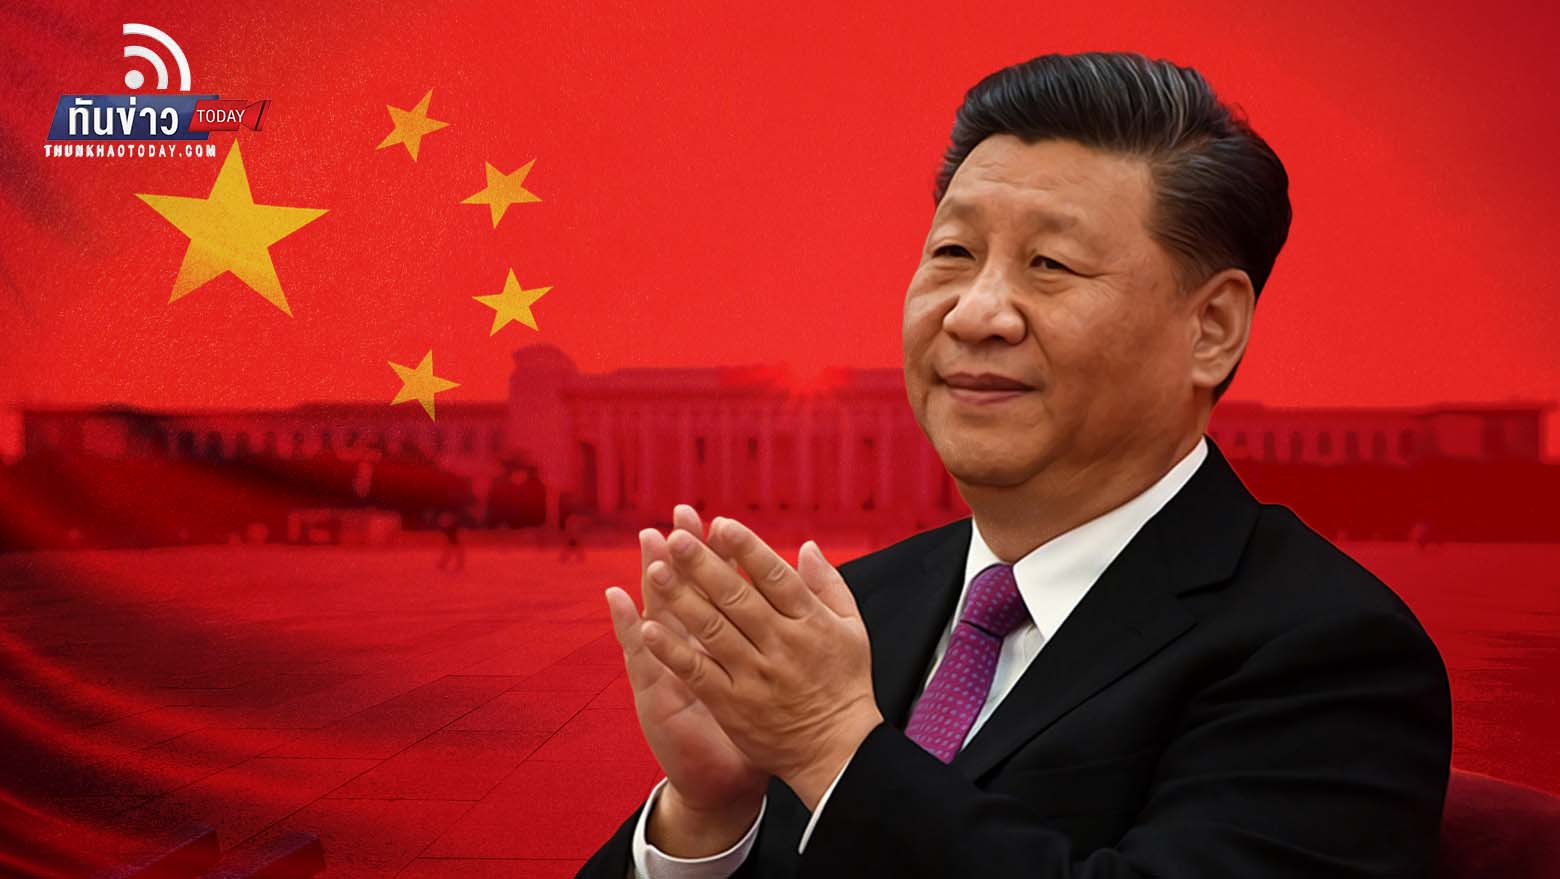 สี จิ้นผิง ผงาดประธานาธิบดีจีน สมัยที่ 3 ครองตำแหน่งอีก 5 ปี